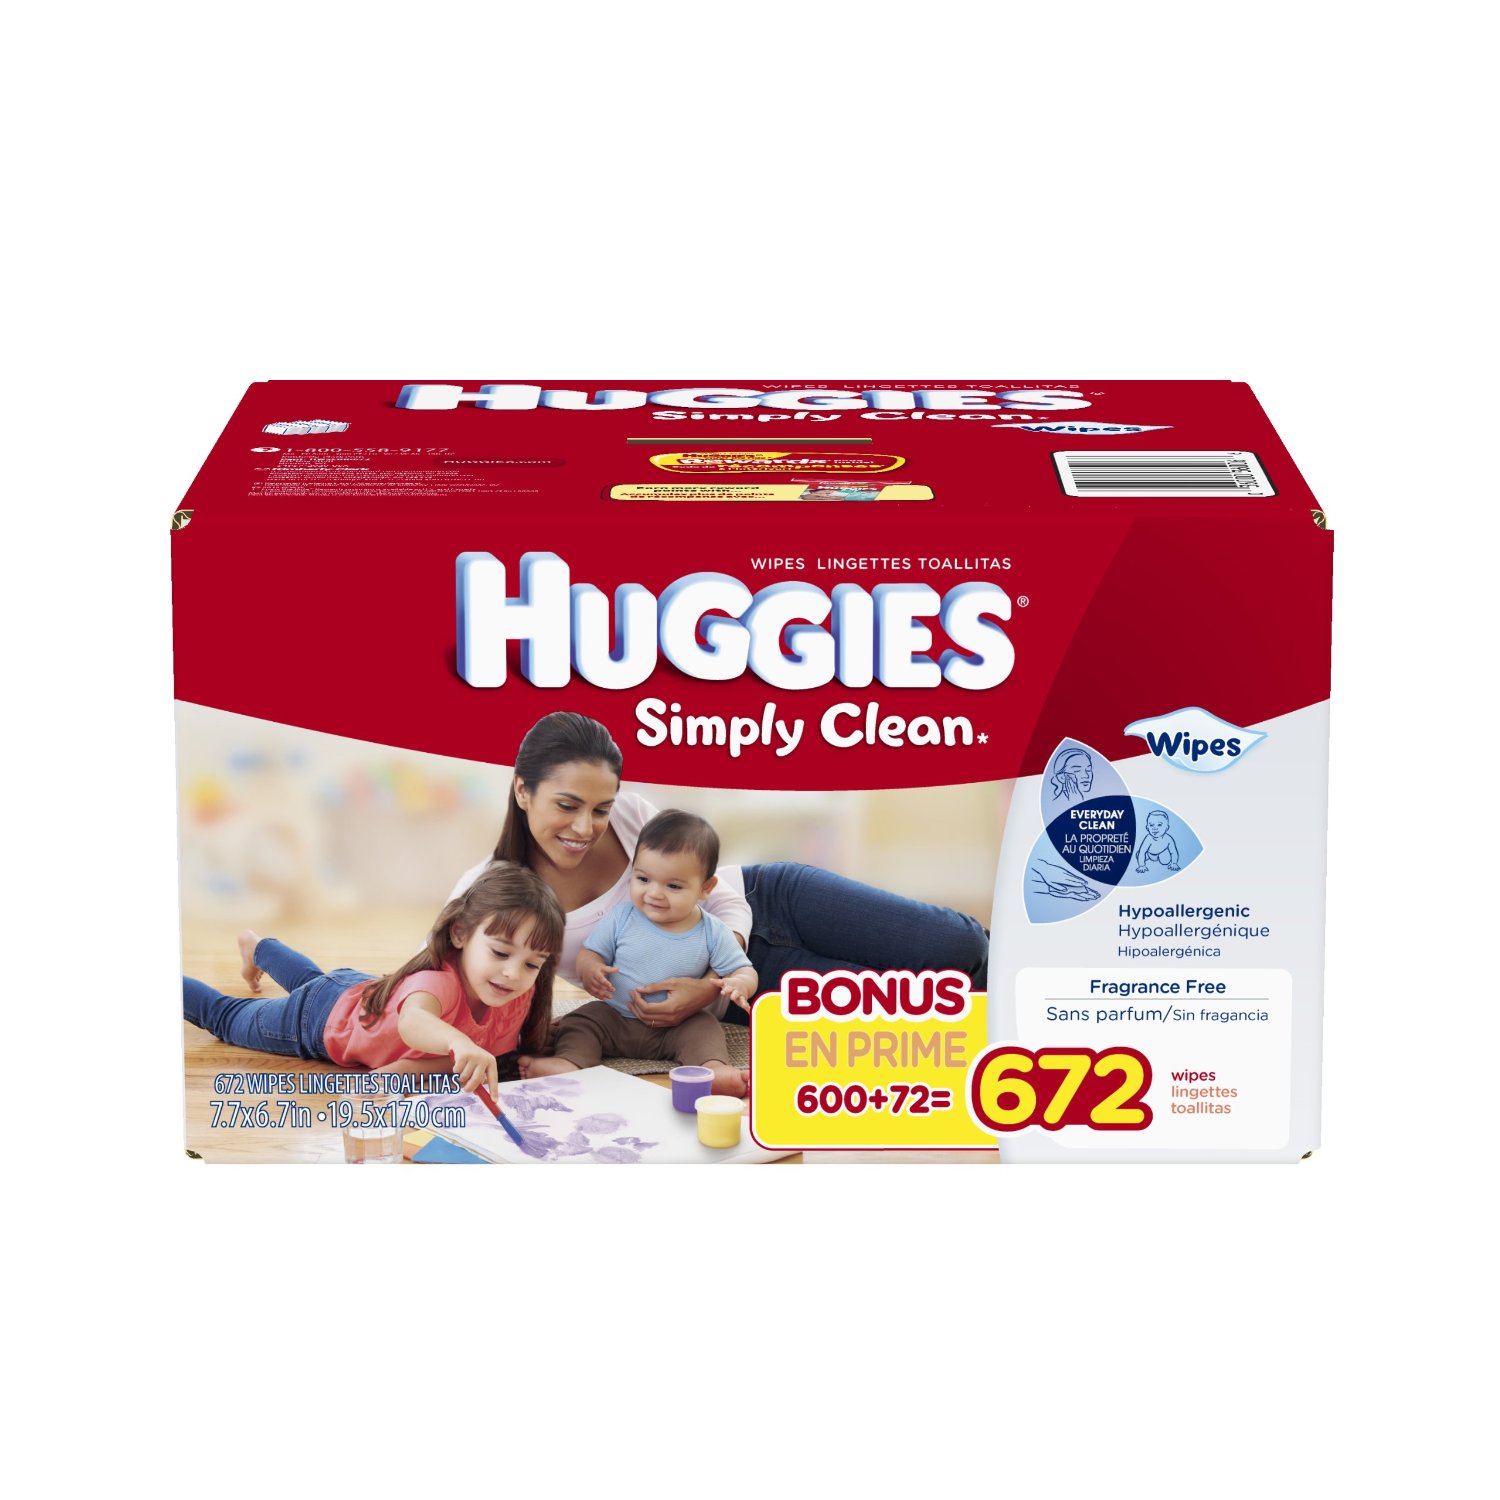 Huggies好奇 Simply Clean無香型嬰兒濕紙巾 (672張) $12.97